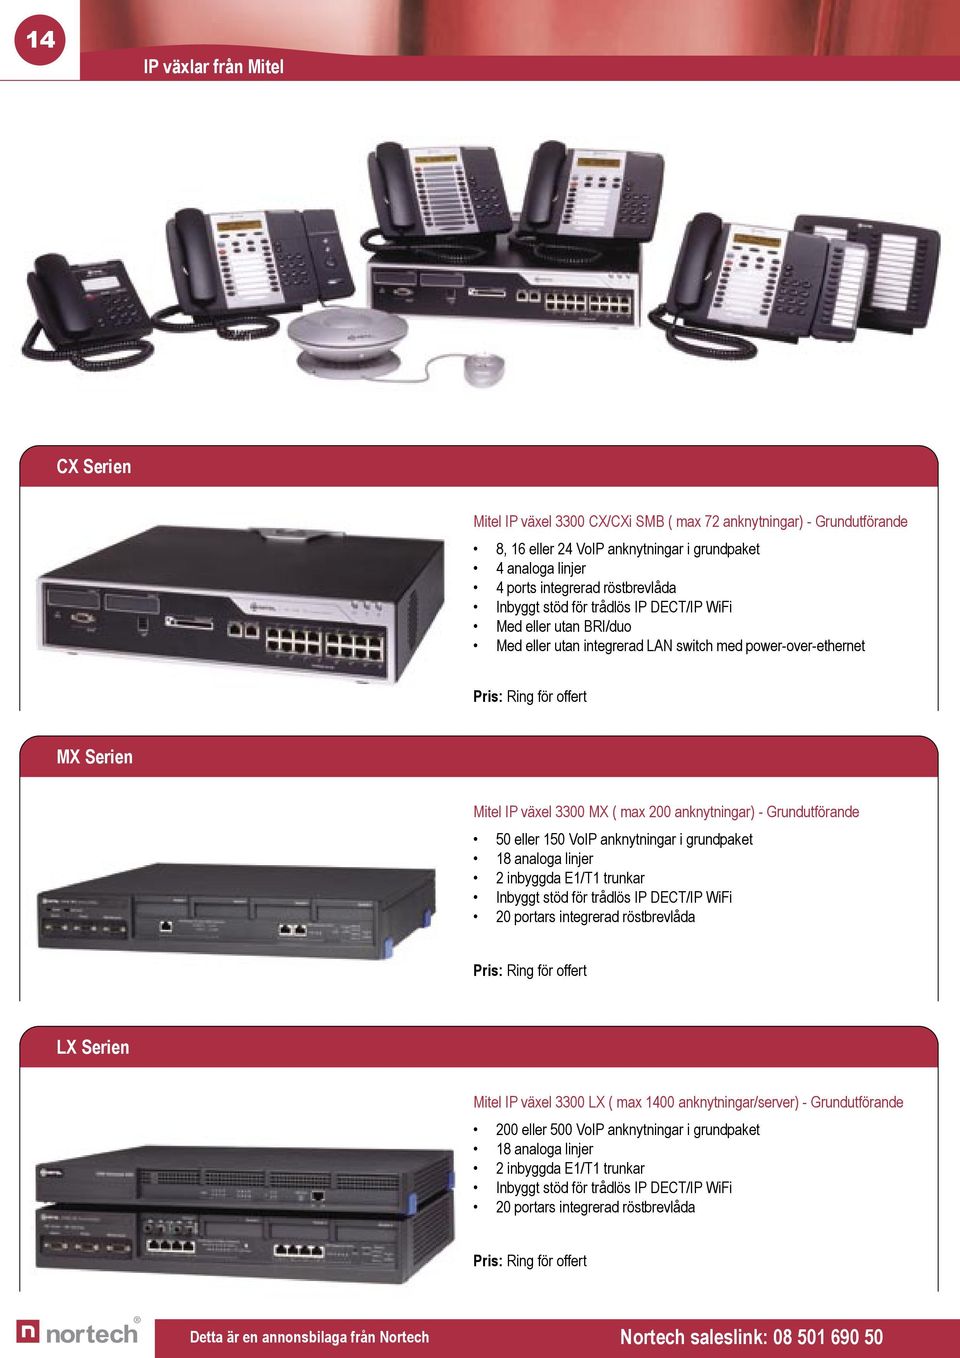 3300 MX ( max 200 anknytningar) - Grundutförande 50 eller 150 VoIP anknytningar i grundpaket 18 analoga linjer 2 inbyggda E1/T1 trunkar Inbyggt stöd för trådlös IP DECT/IP WiFi 20 portars integrerad